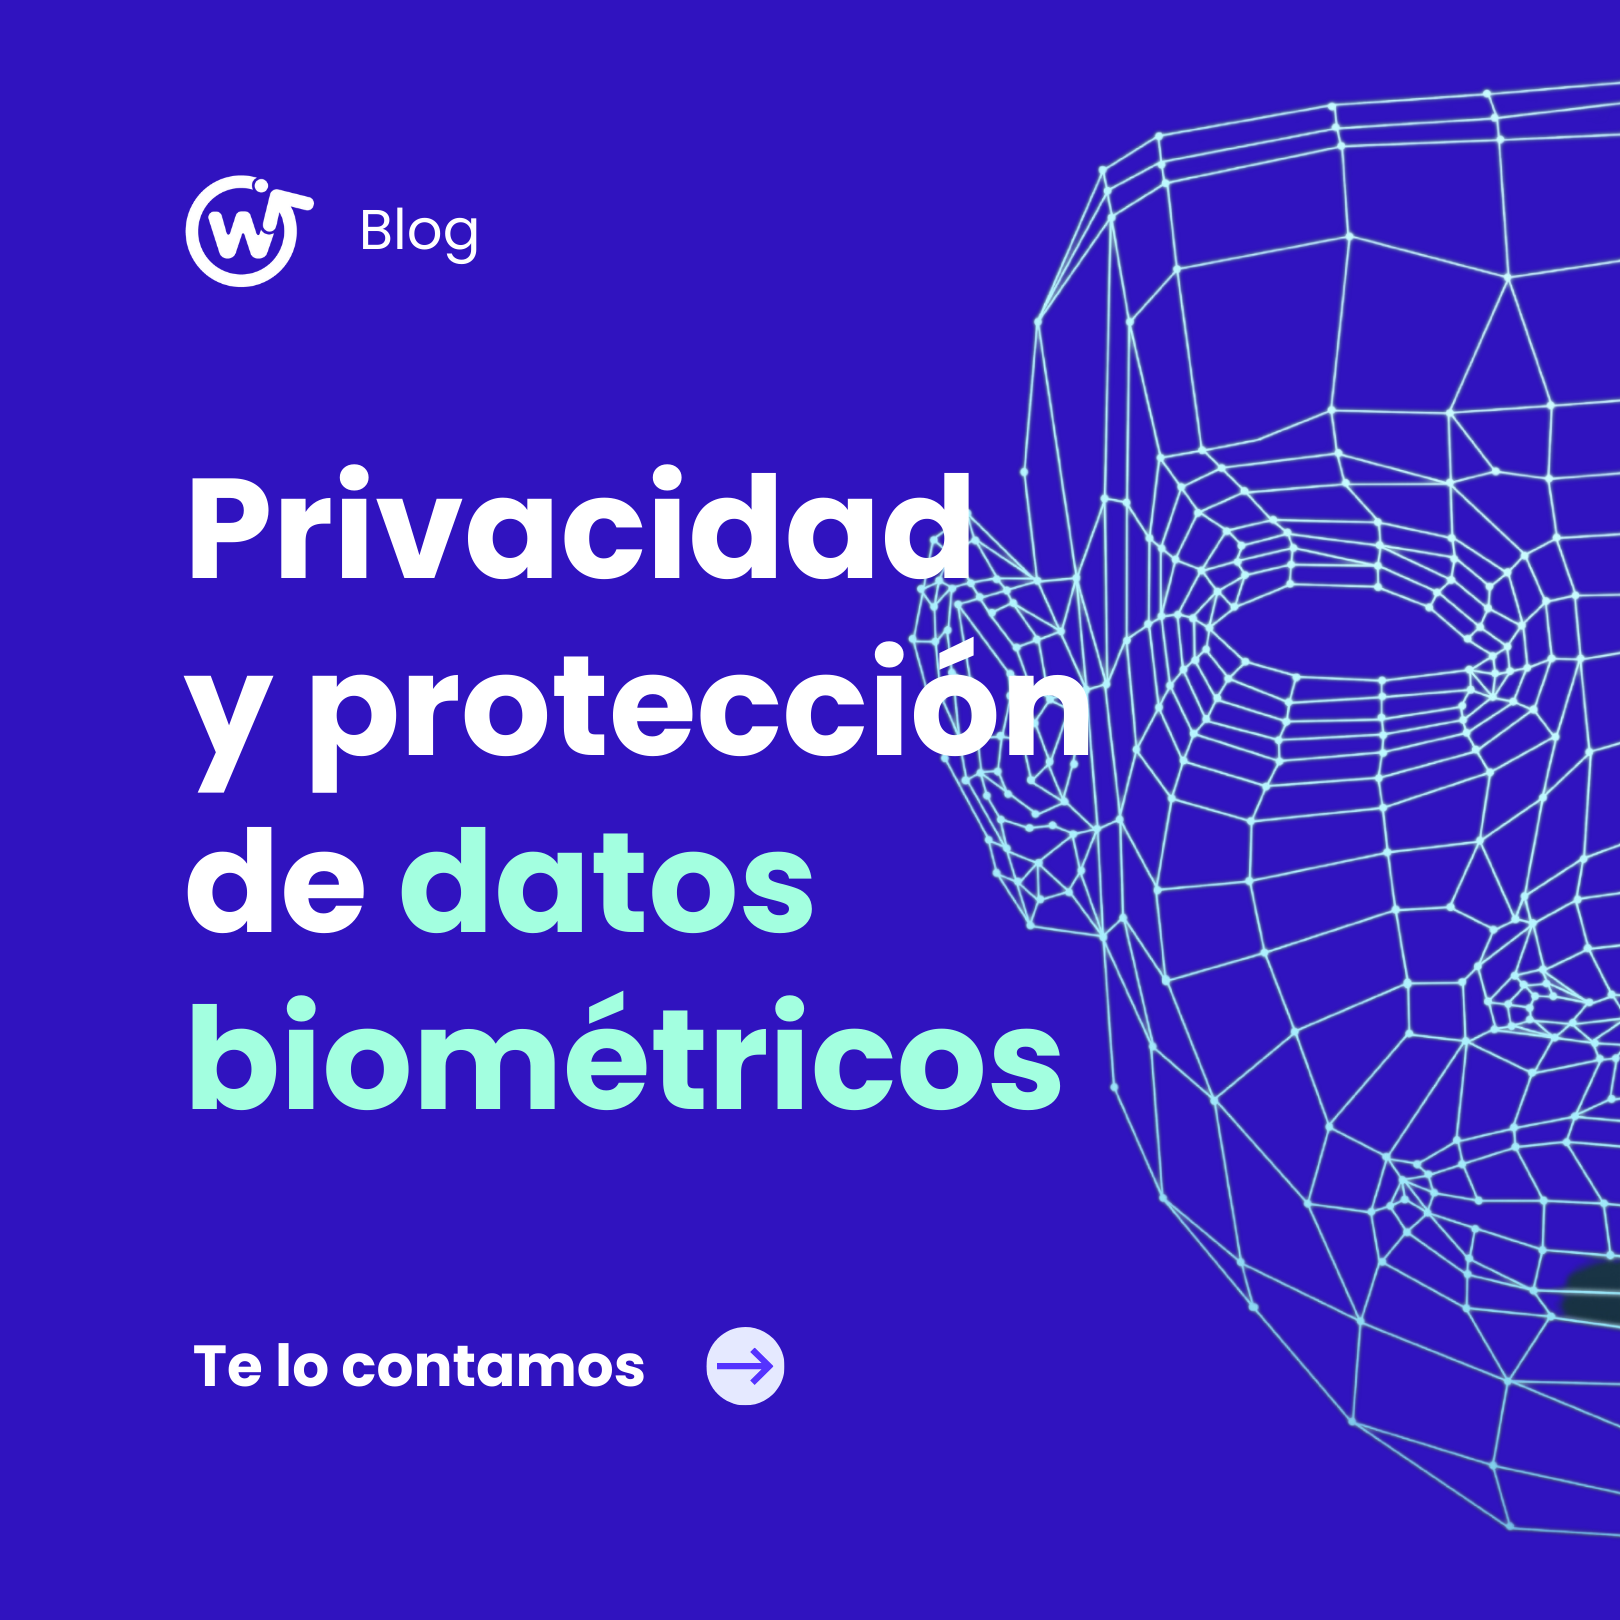 La importancia de la protección de datos biométricos en la privacidad del usuario